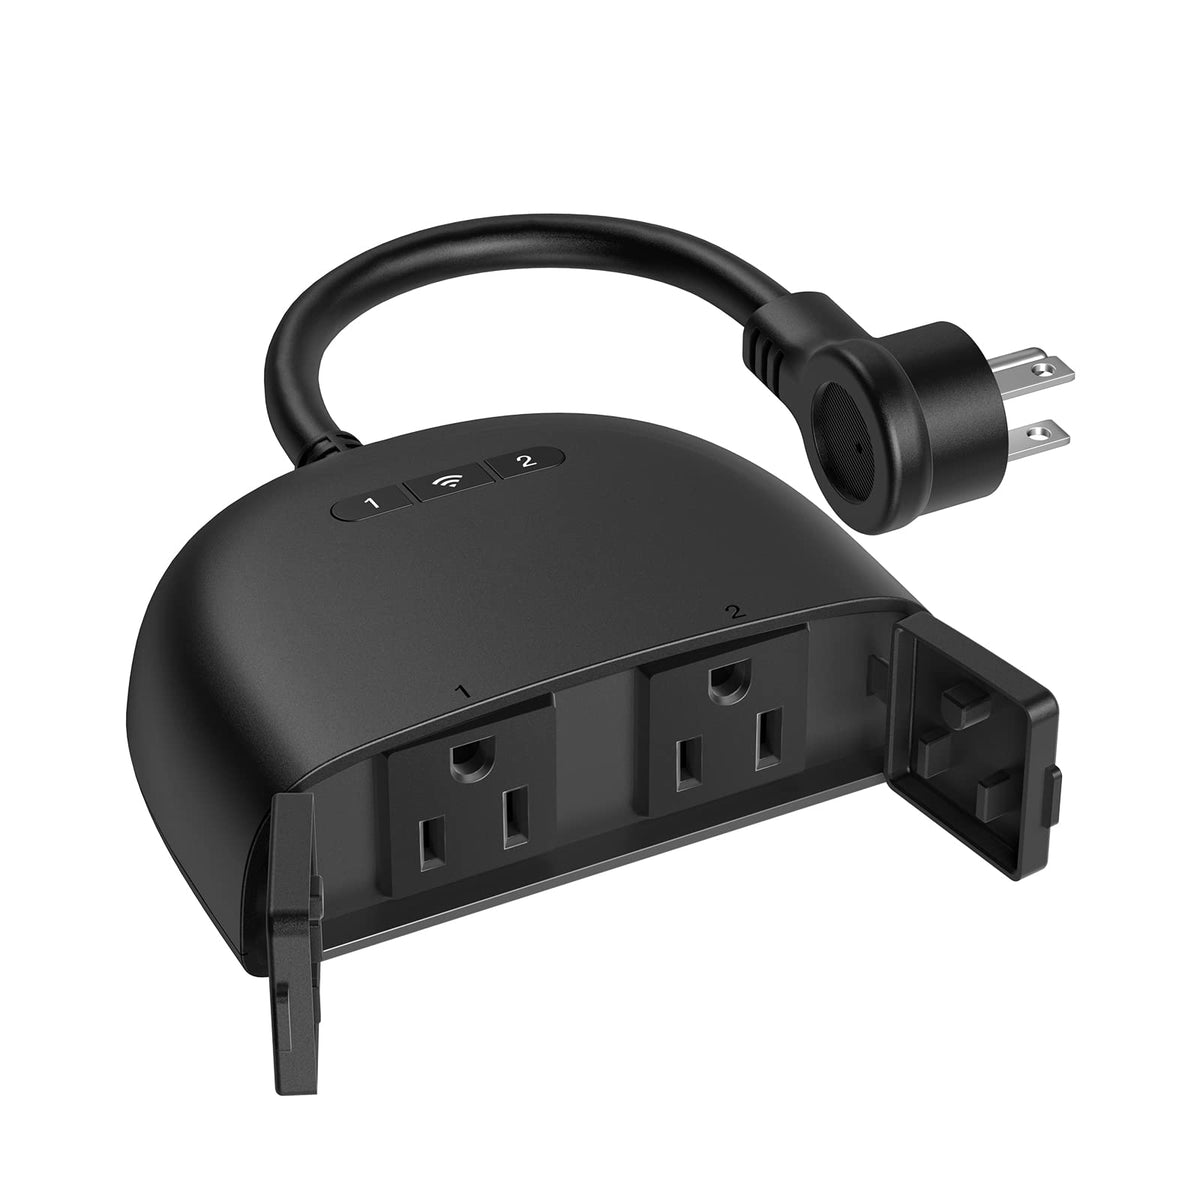 Smart Plug, Sp10 Alexa Plug 2 Packs, Smart Plugs That Work With